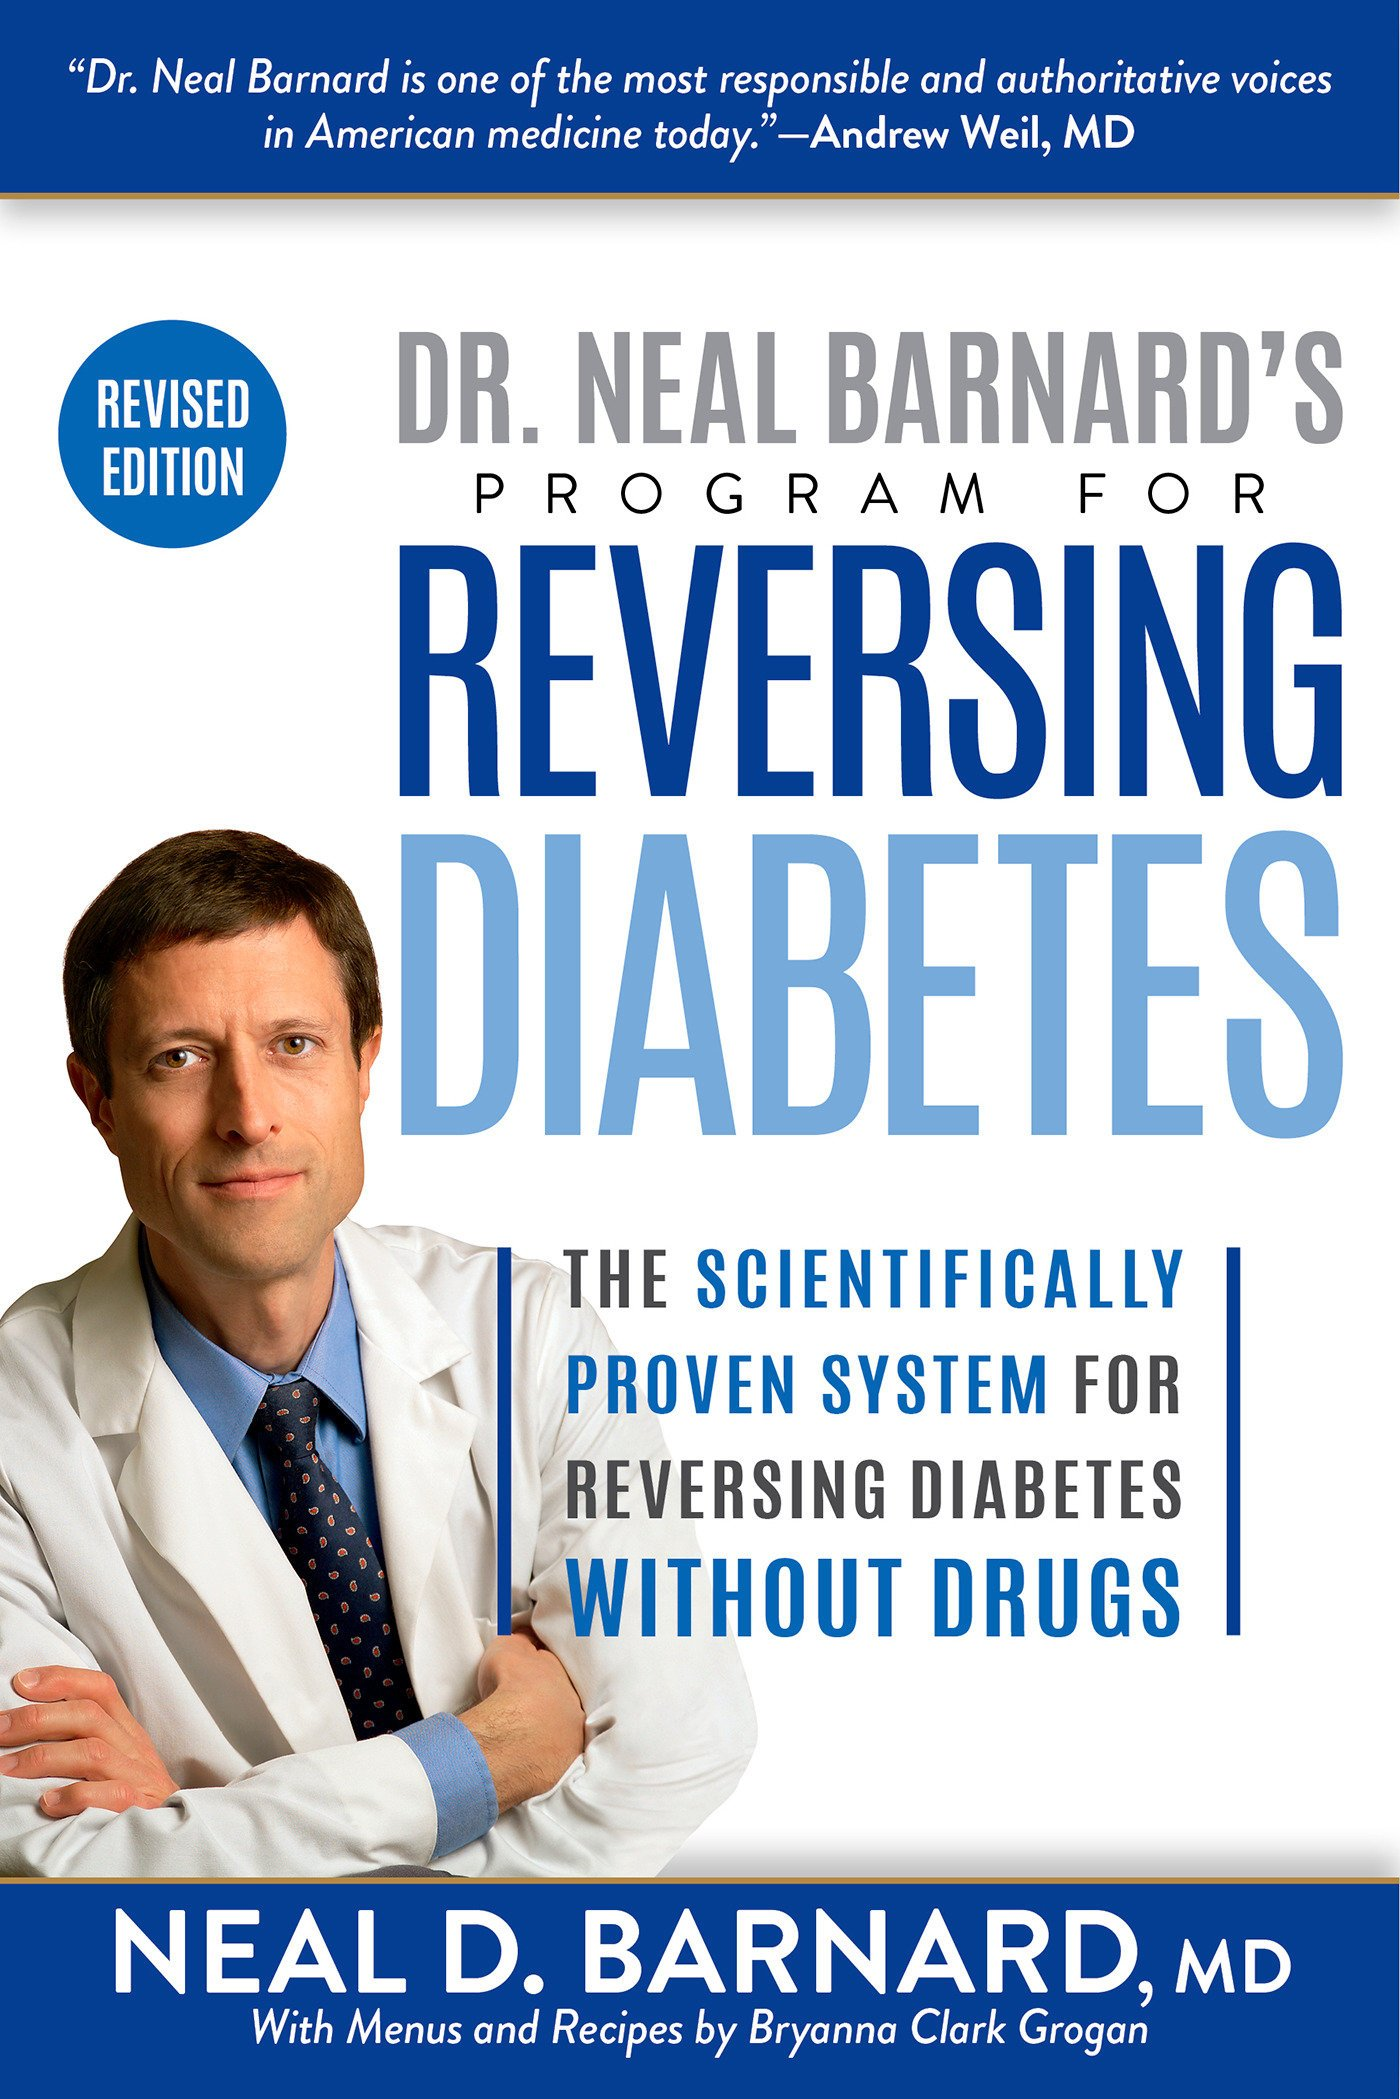 Cover of the book "Dr. Neal Barnard's program for Reversing Diabetes"